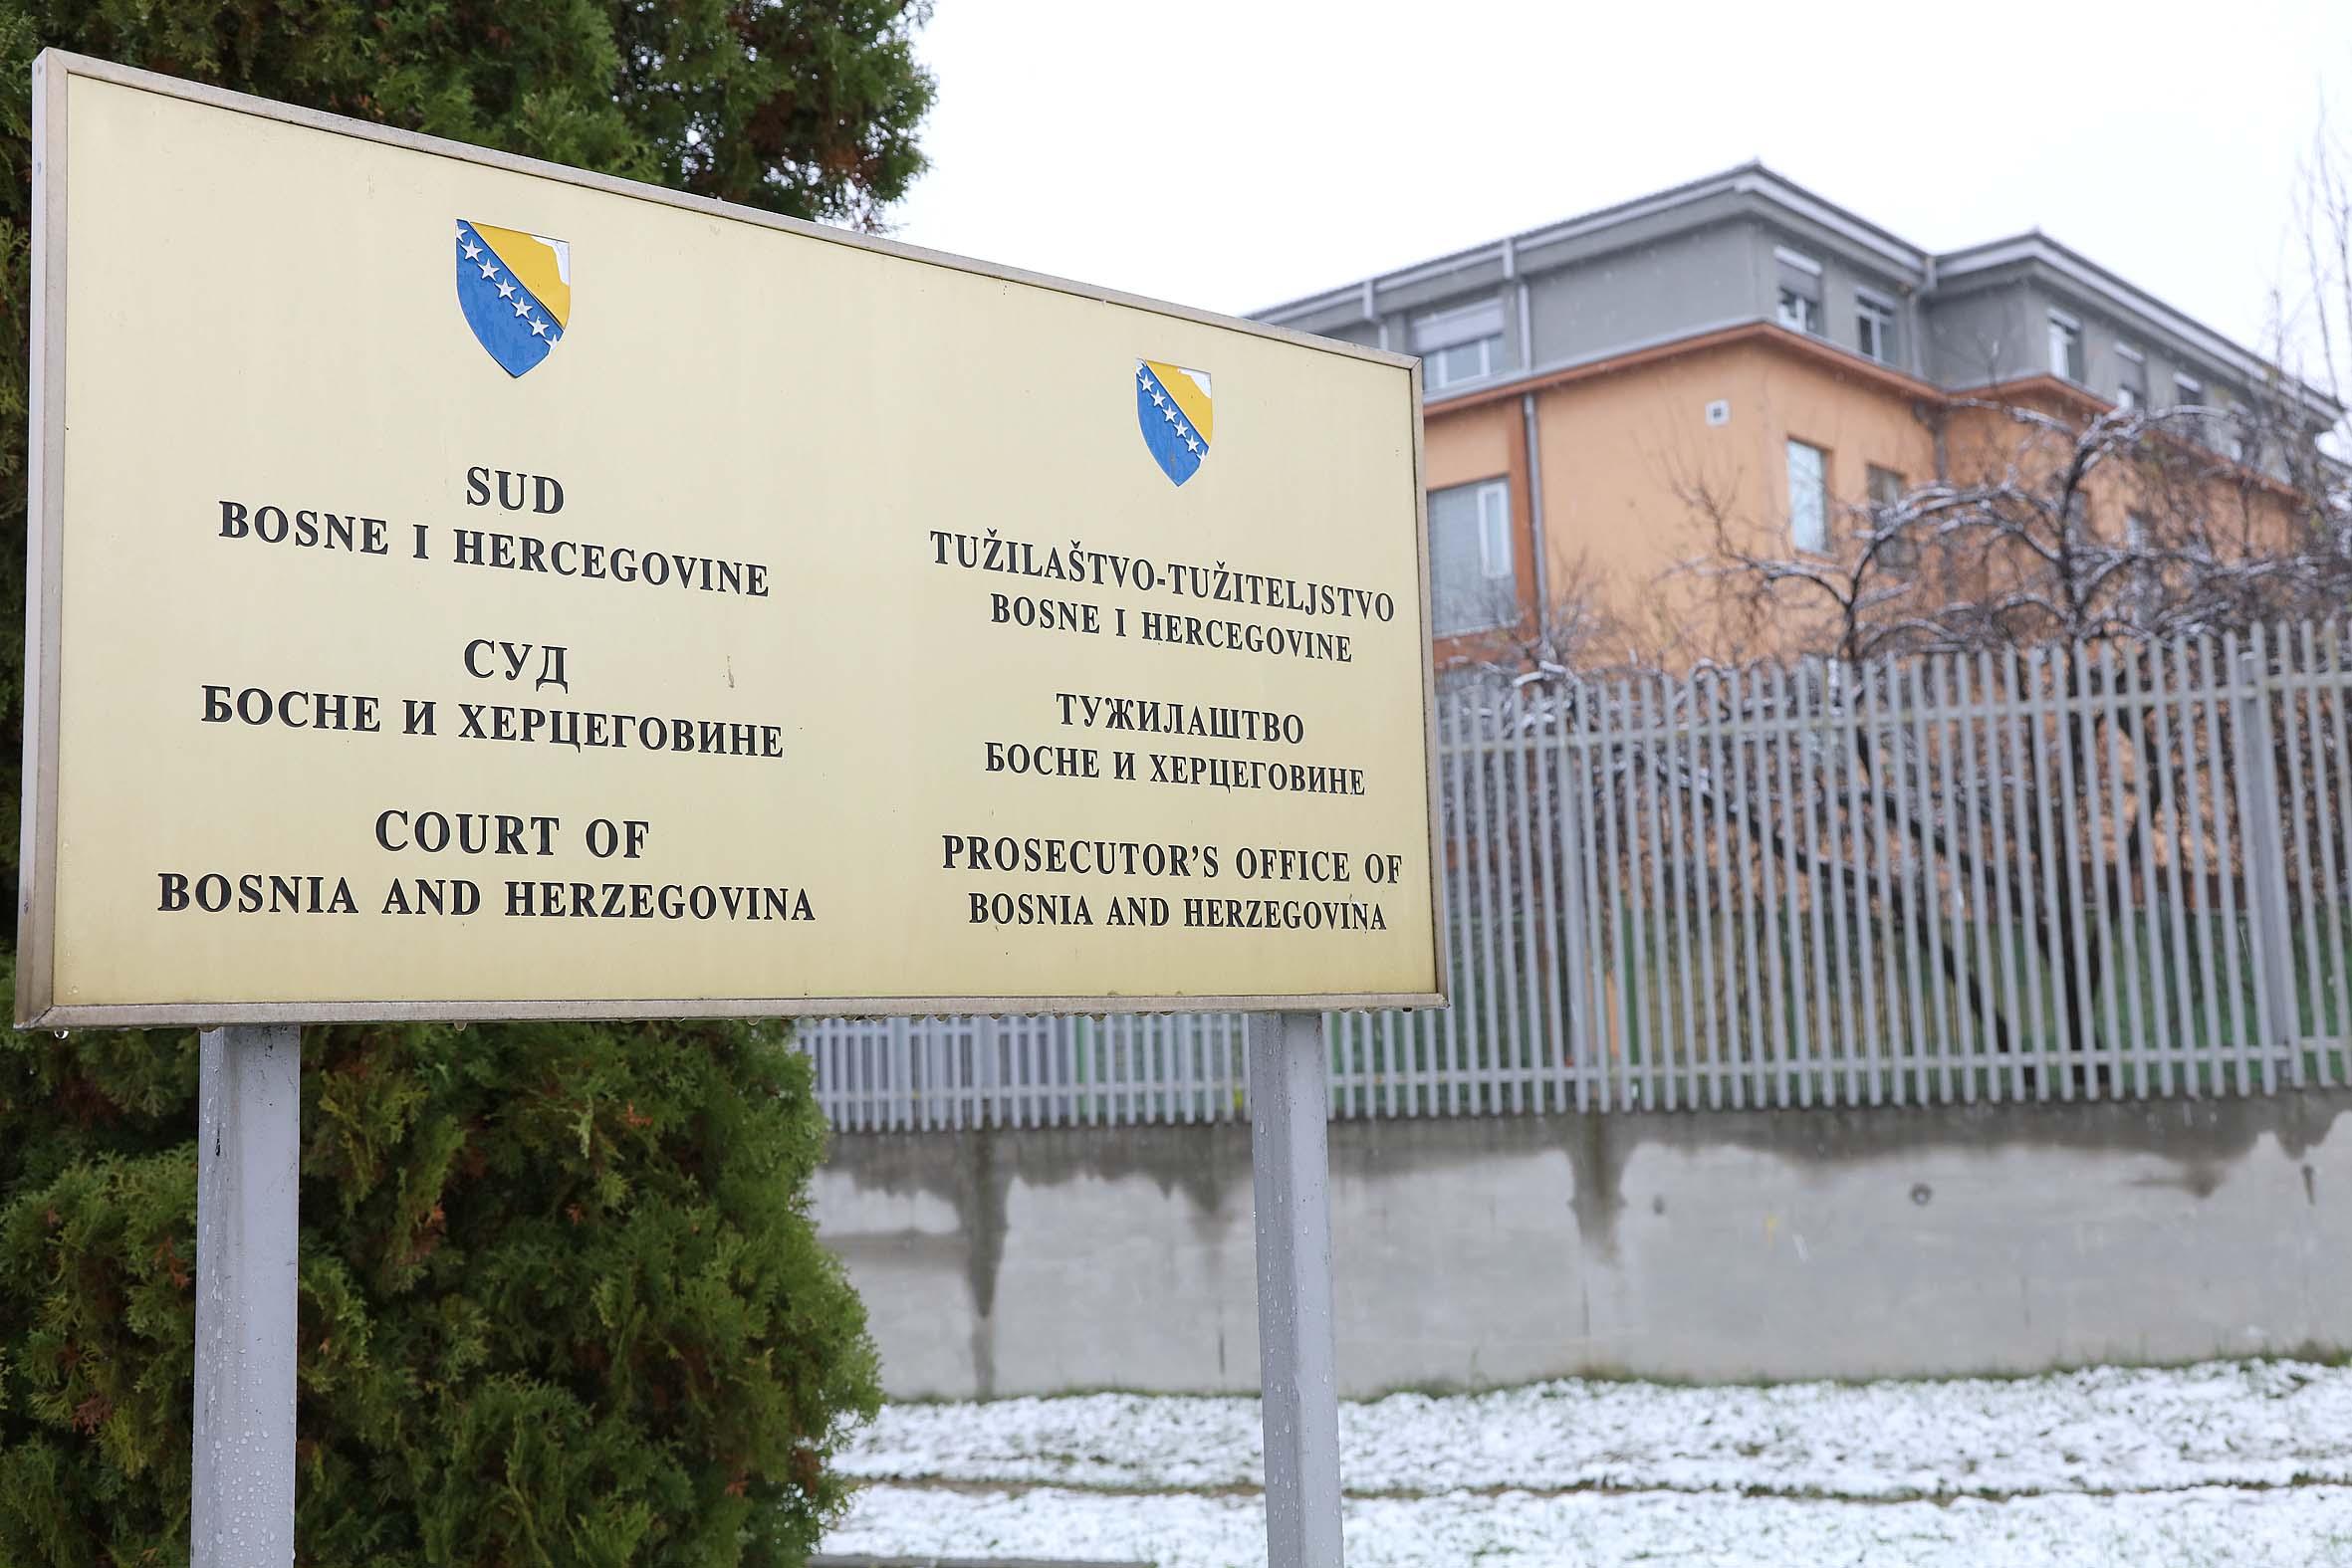 Sudije Suda Bosne i Hercegovine uputili su javno saopćenje - Avaz